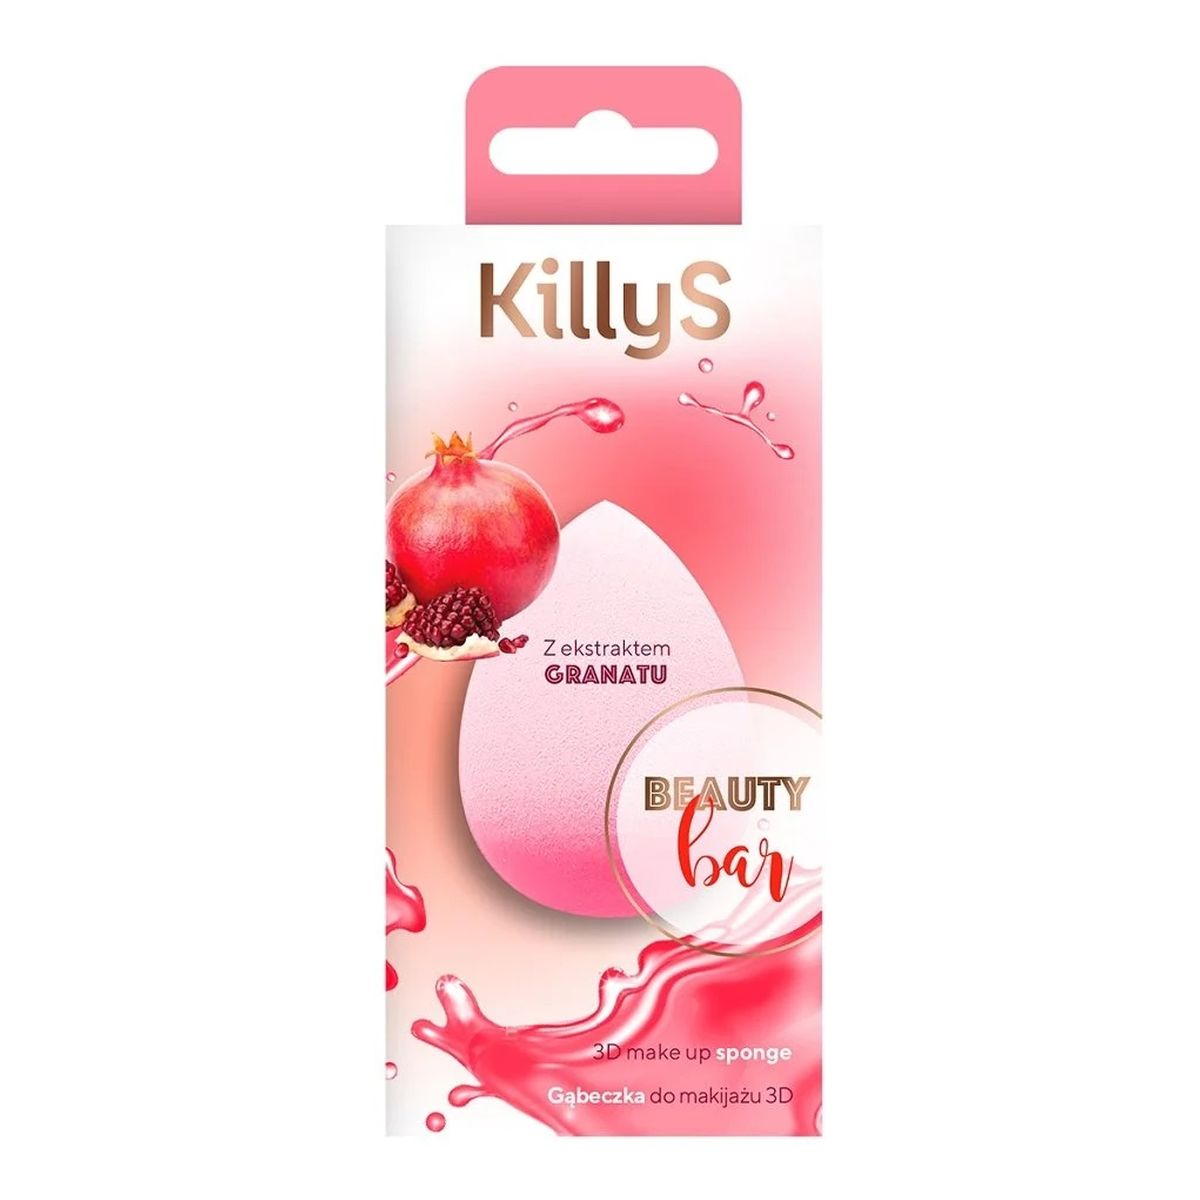 KillyS Beauty bar 3d gąbeczka do makijażu z ekstraktem z granatu